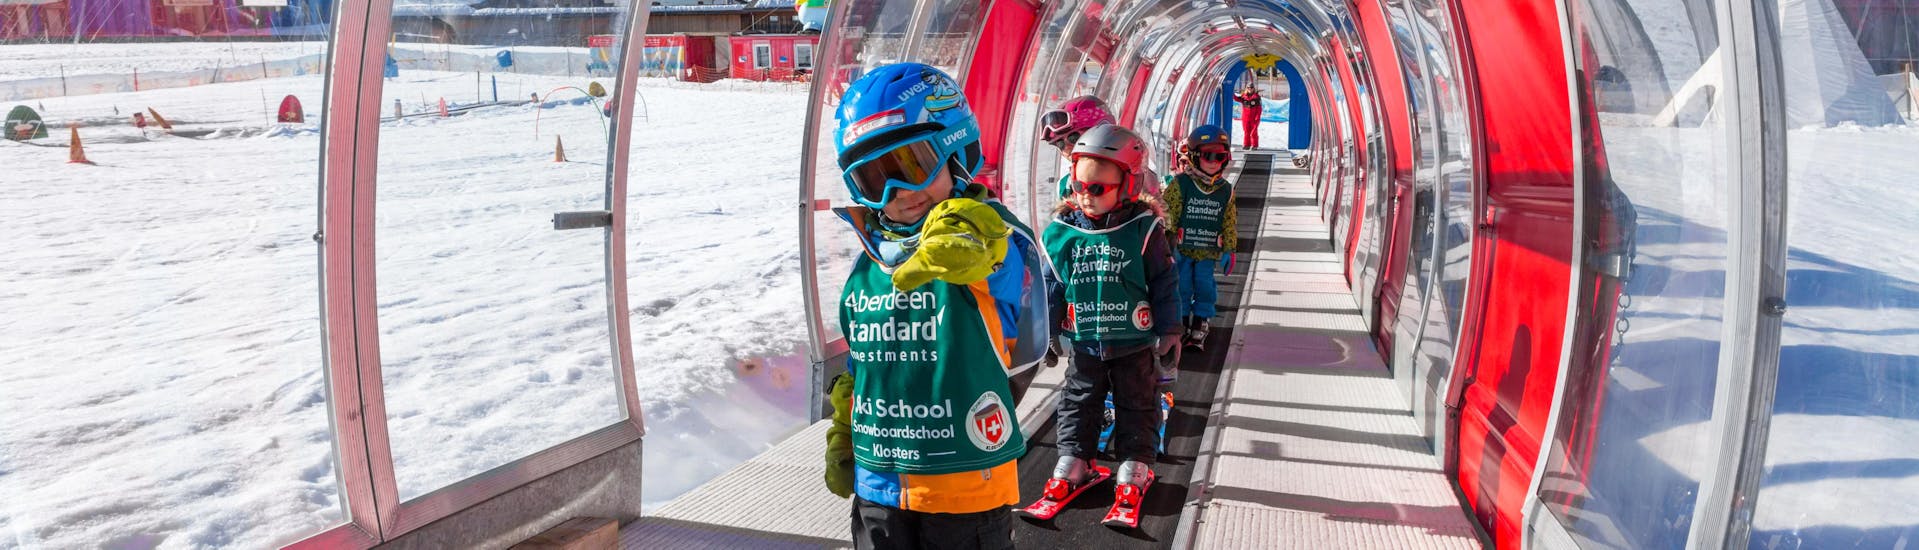 Lezioni di sci per bambini "Snowgarden" (fino a 6 anni) per principianti.